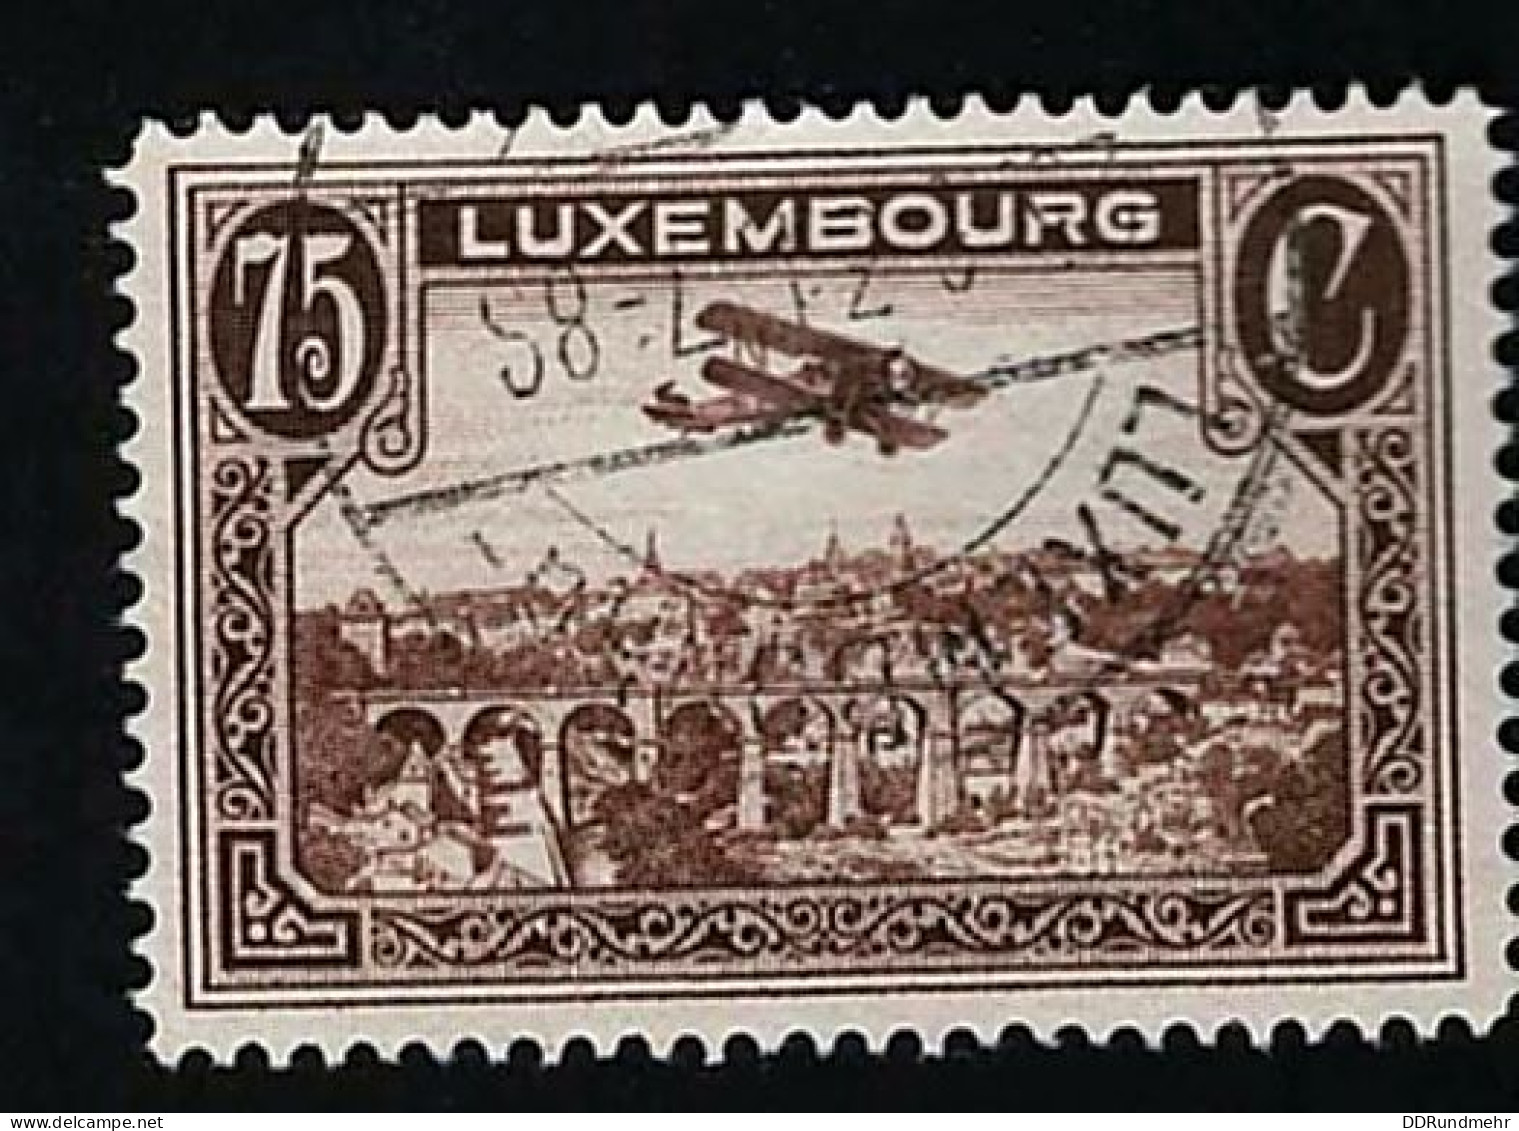 1931 Biplane  Michel LU 234 Stamp Number LU C2 Yvert Et Tellier LU PA2 Stanley Gibbons LU 297 Used - Gebraucht